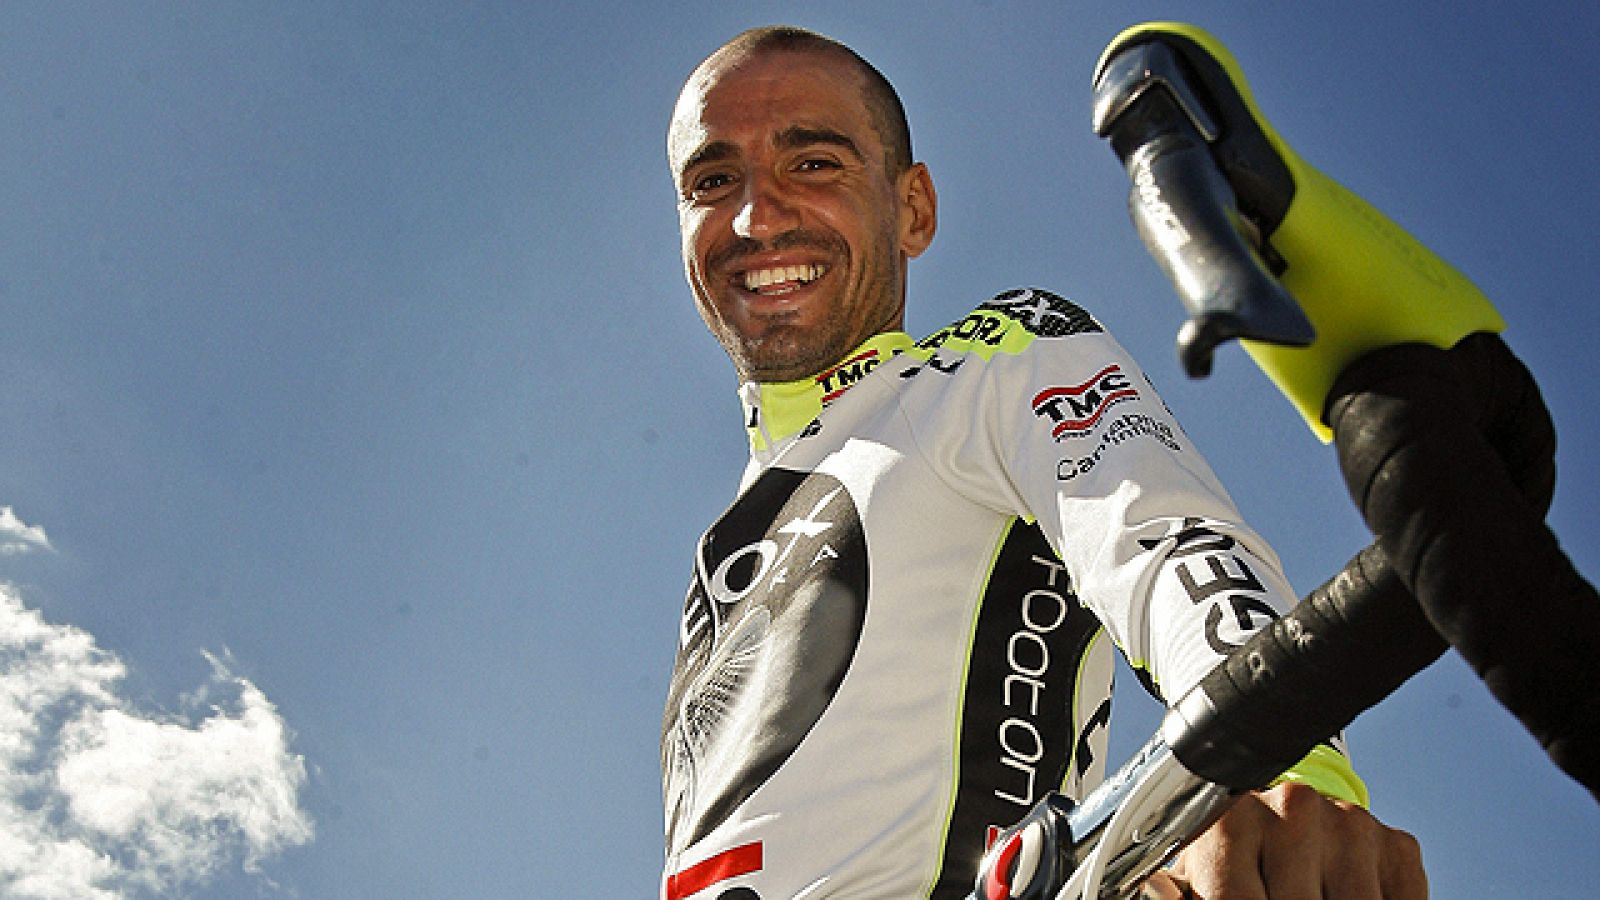 El flamante líder de la Vuelta ciclista a España 2011, el cántabro Juanjo Cobo, ha sido aclamado en la salida de Villa Romana La Olmeda y eso que la carrera todavía no ha llegado a Cantabria.